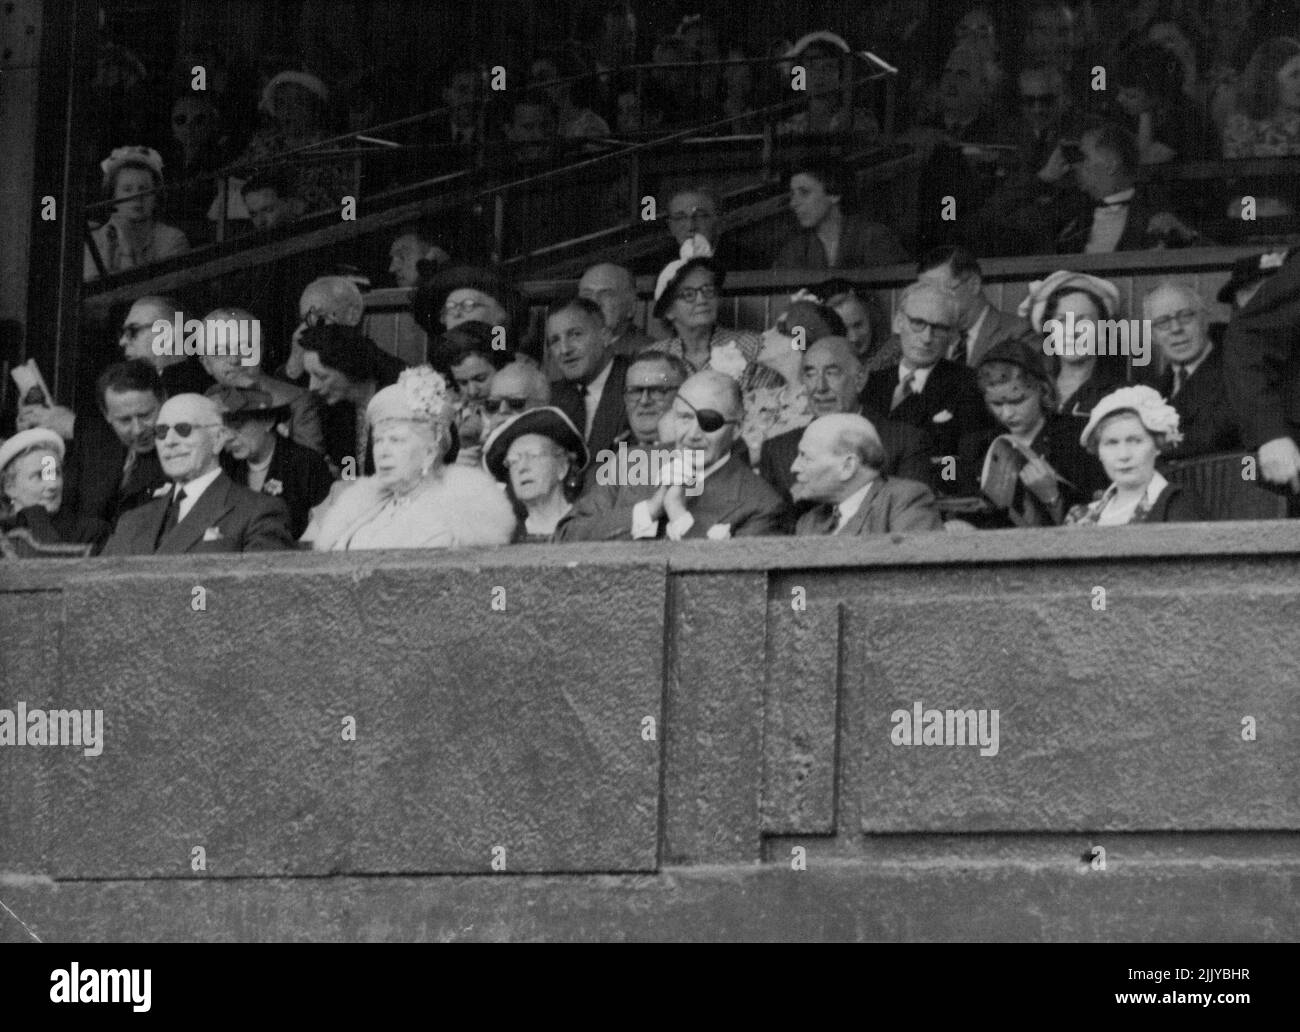 In Royal Box oggi -- nella Royal Box a Wimbledon questo pomeriggio, 30 giugno, sono (da sinistra a destra) il Conte di Athlone, sua altezza reale Regina Maria, il Sig. Lewis Douglas, ex Ambasciatore degli Stati Uniti a Londra; il primo Ministro Sig. C. R. Attlee, e la Sig.ra Attlee. Luglio 11, 1951. (Foto di stampa associata). Foto Stock